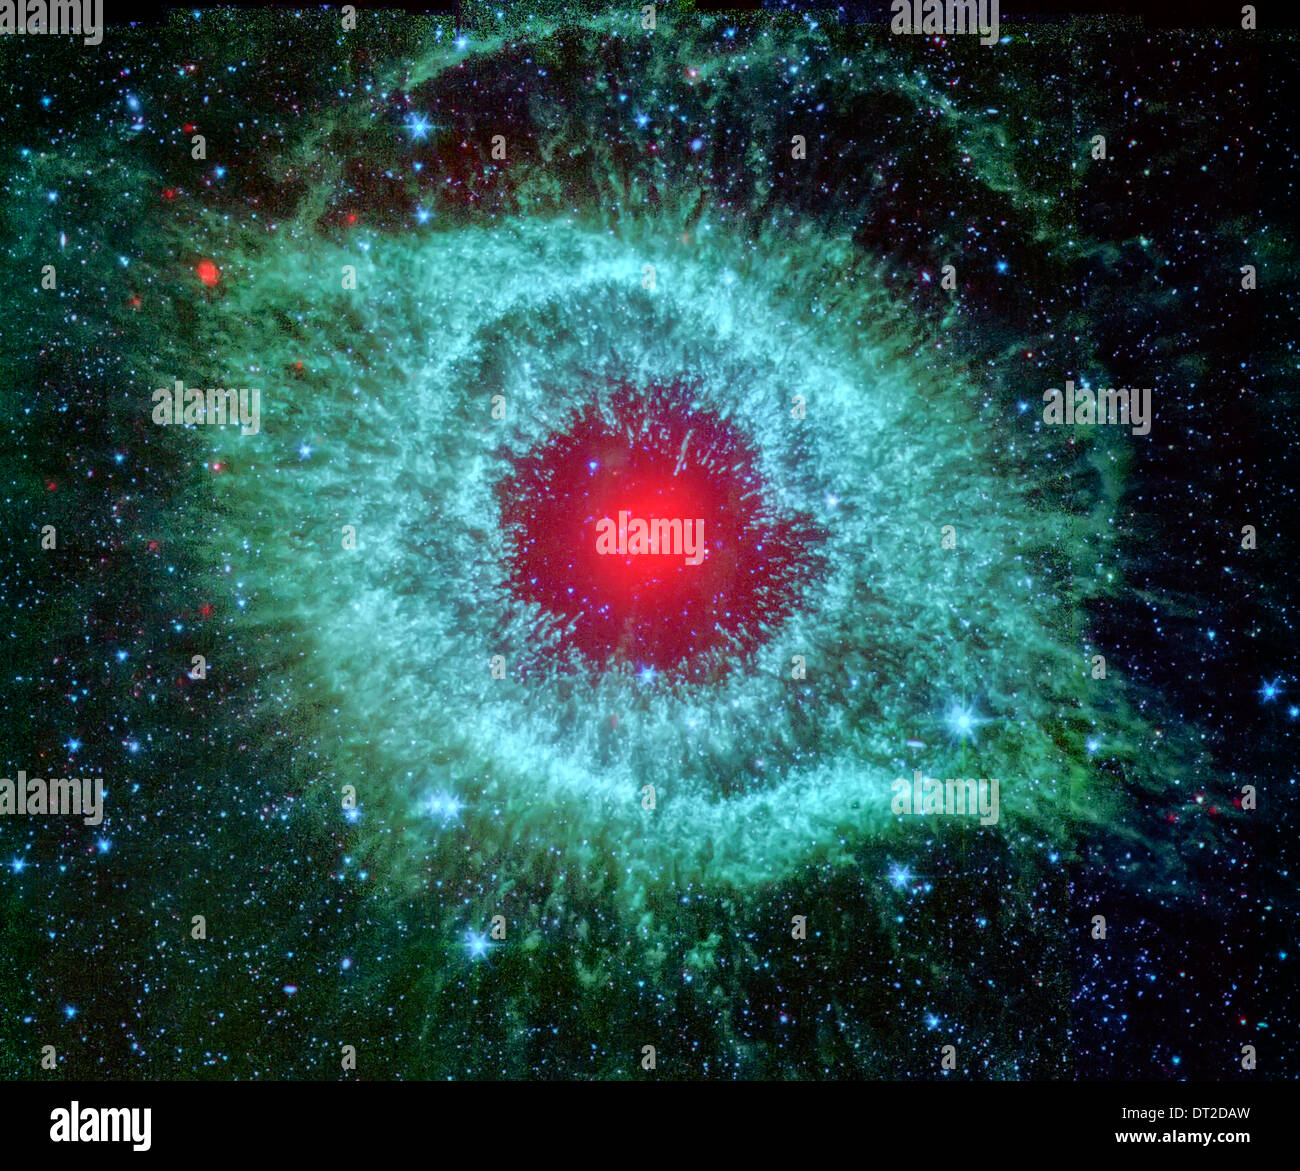 La nebulosa Helix, spesso fotografata da astronomi dilettanti per i suoi colori vivaci e inquietante rassomiglianza con un occhio gigante. Foto Stock